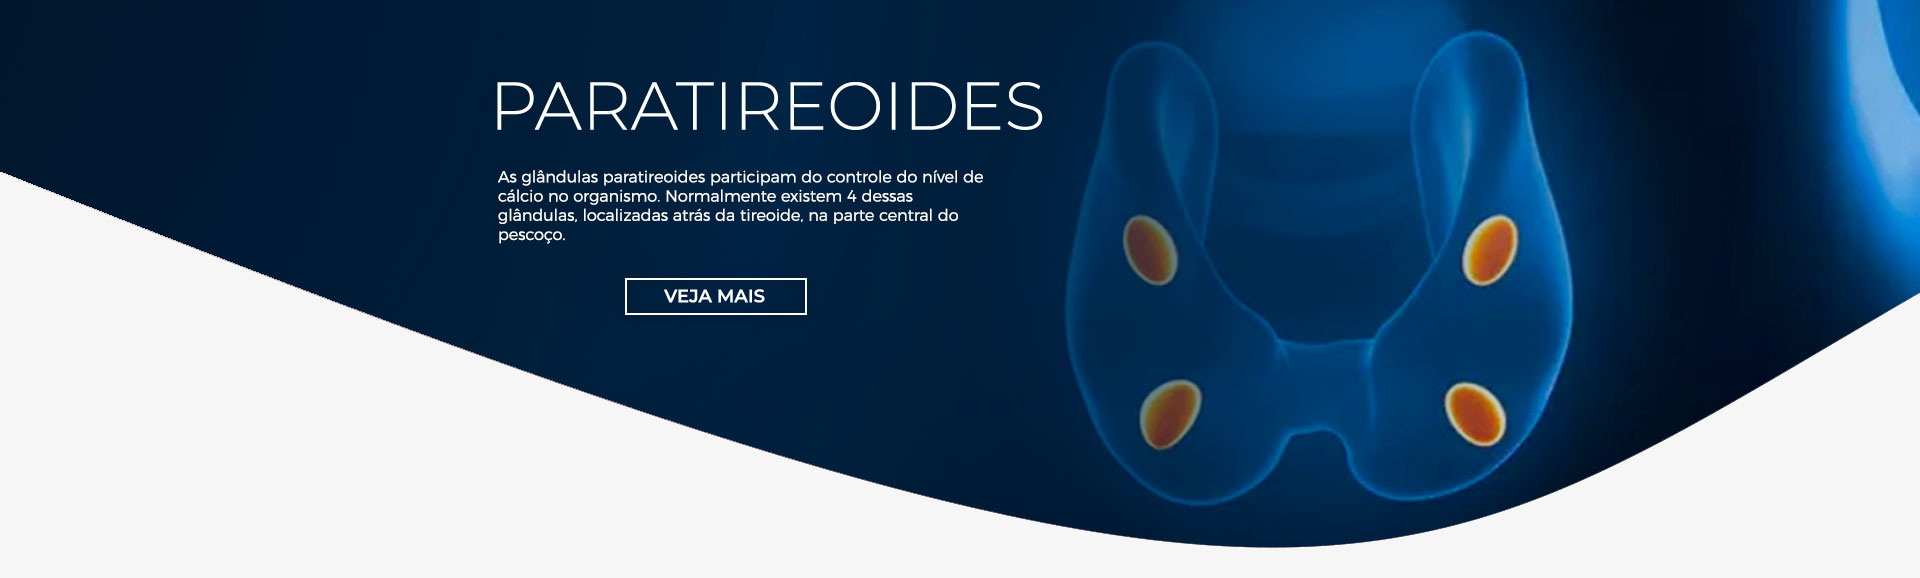 Paratireoides | Dr. André Potenza Desktop